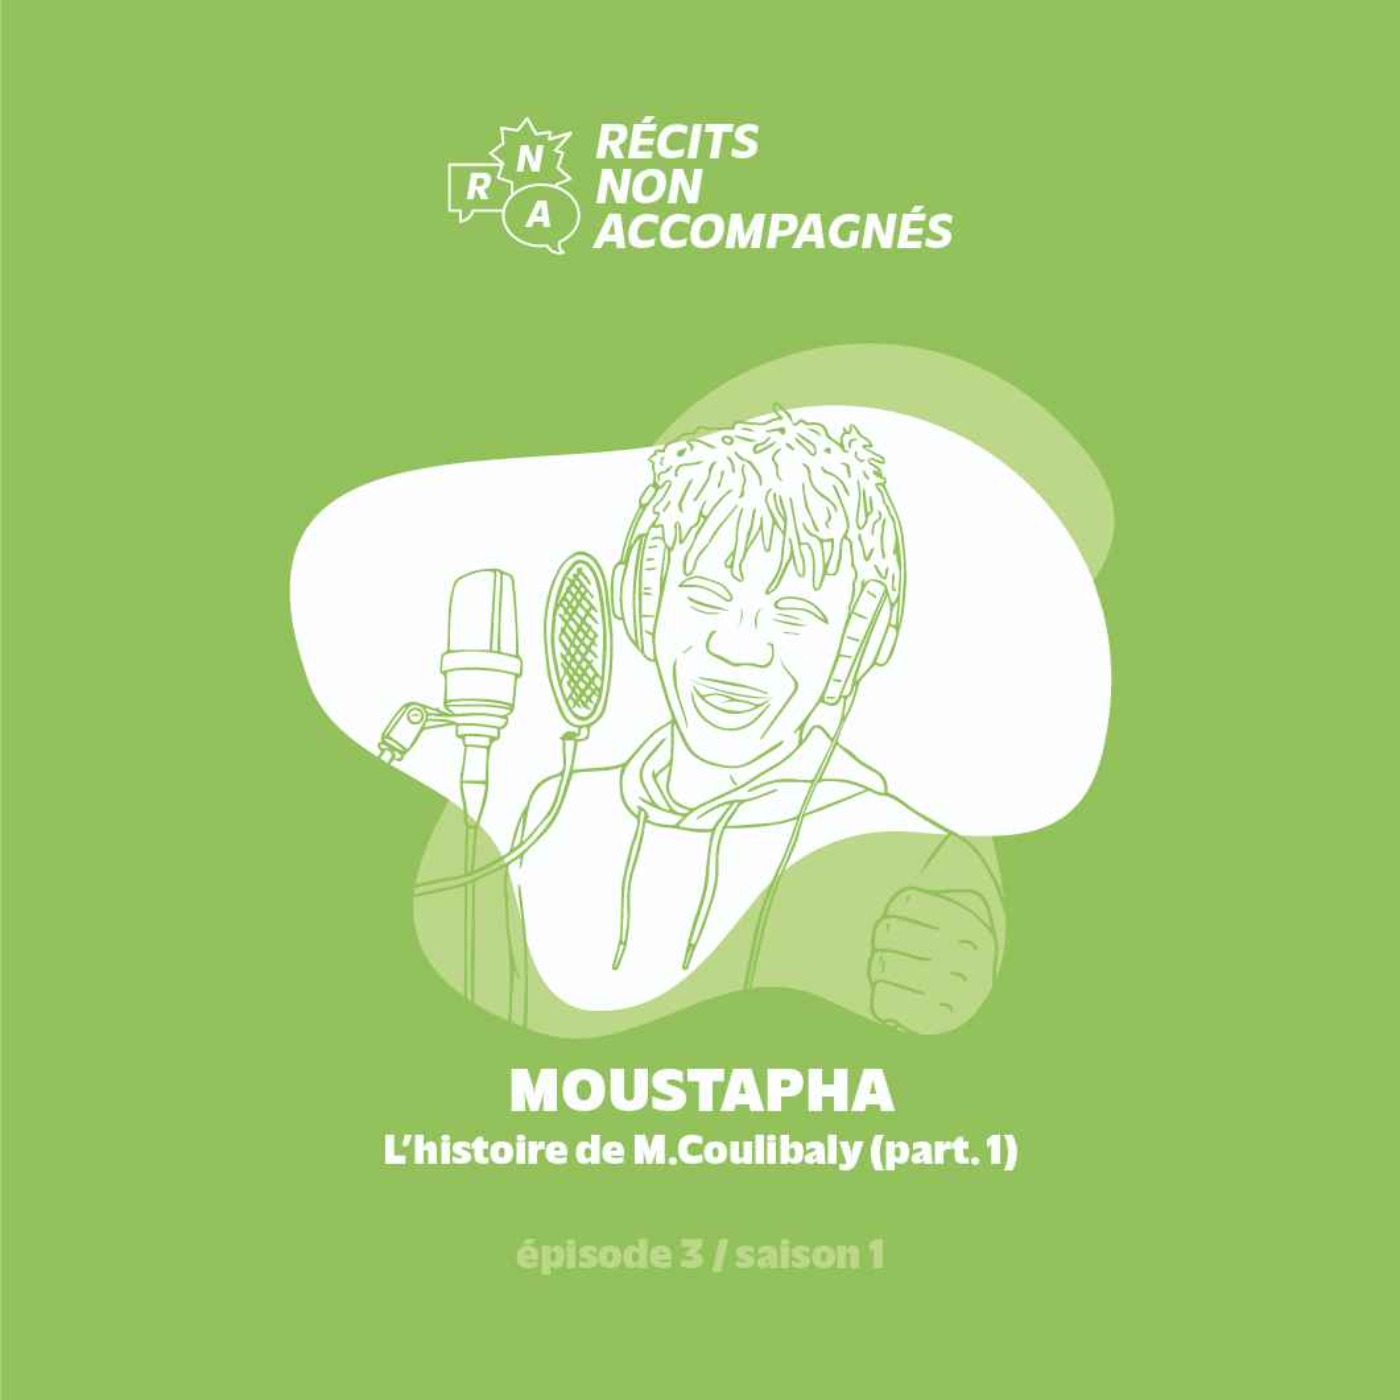 Ep.3 / Moustapha - "L'histoire de M. Coulibaly" (part. 1)